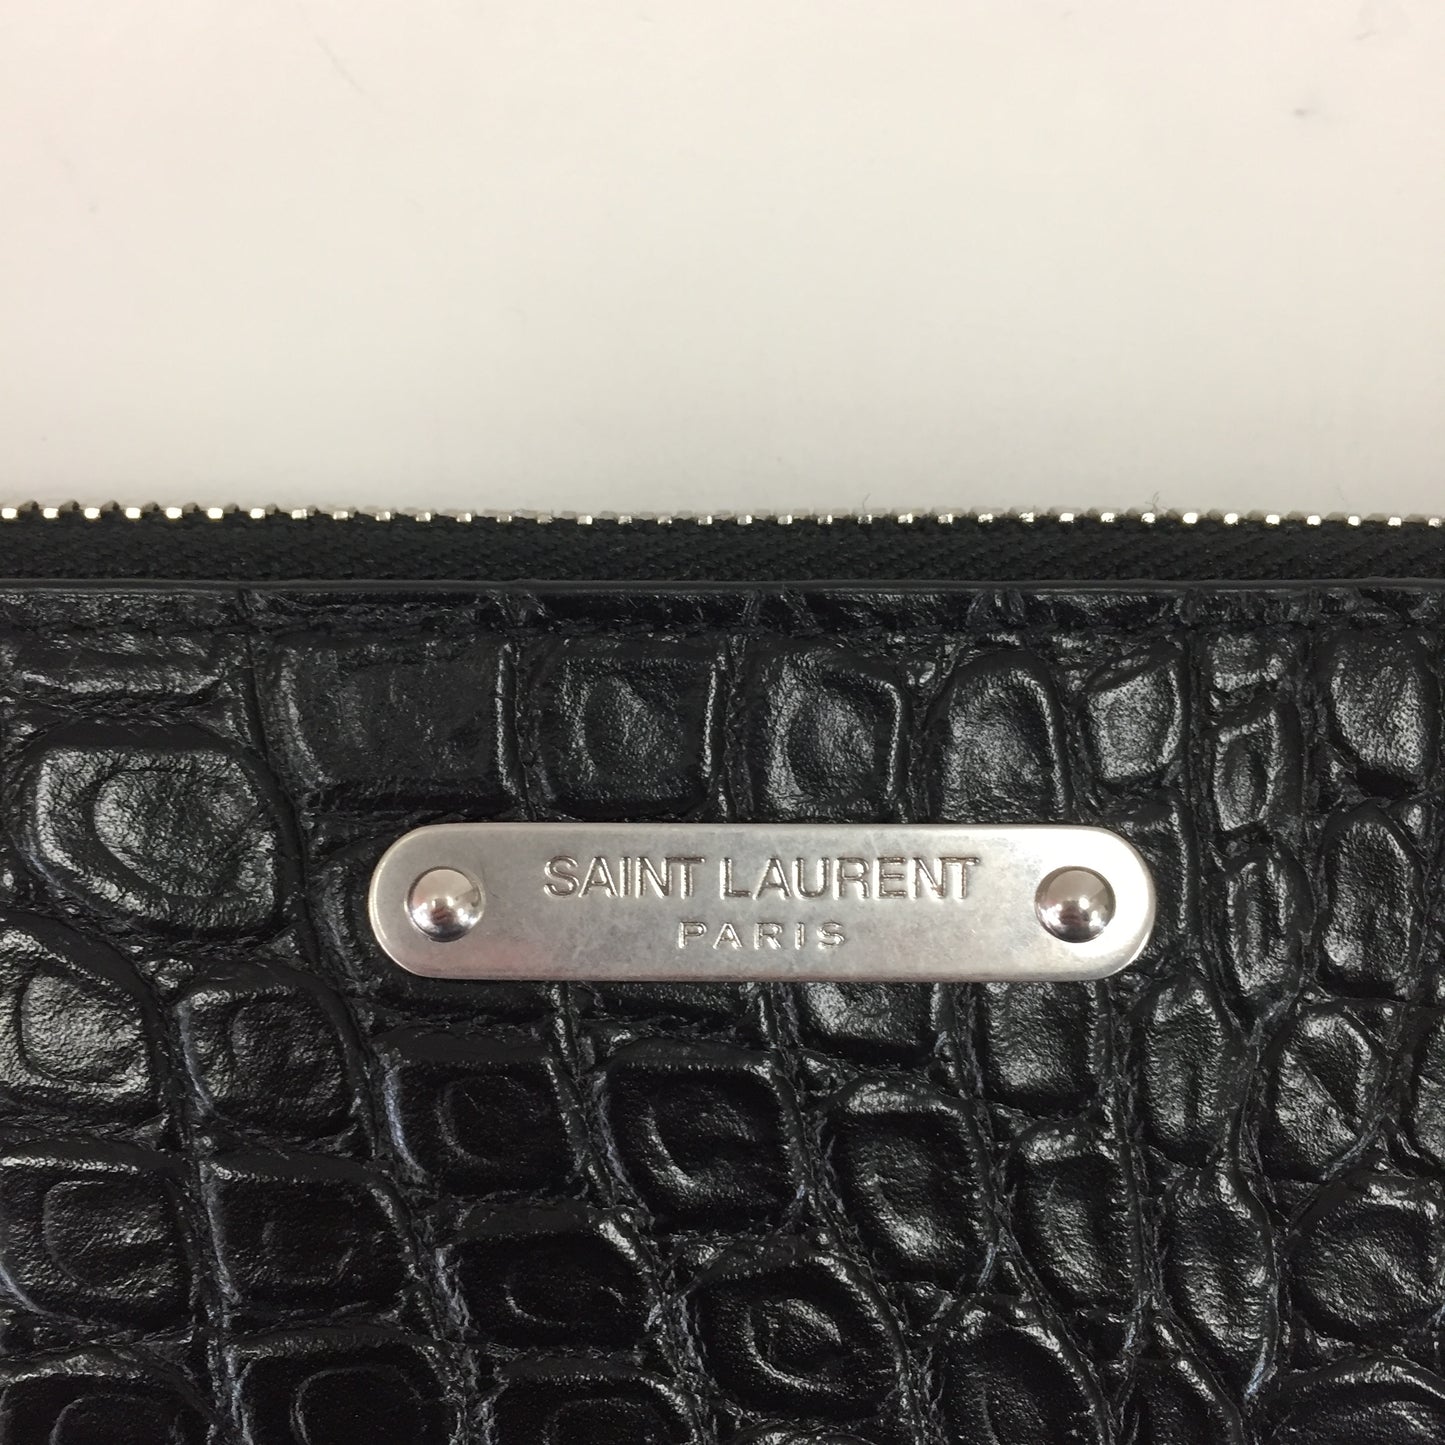 Authentic Saint Laurent Black Croc Embossed Leather Pouch